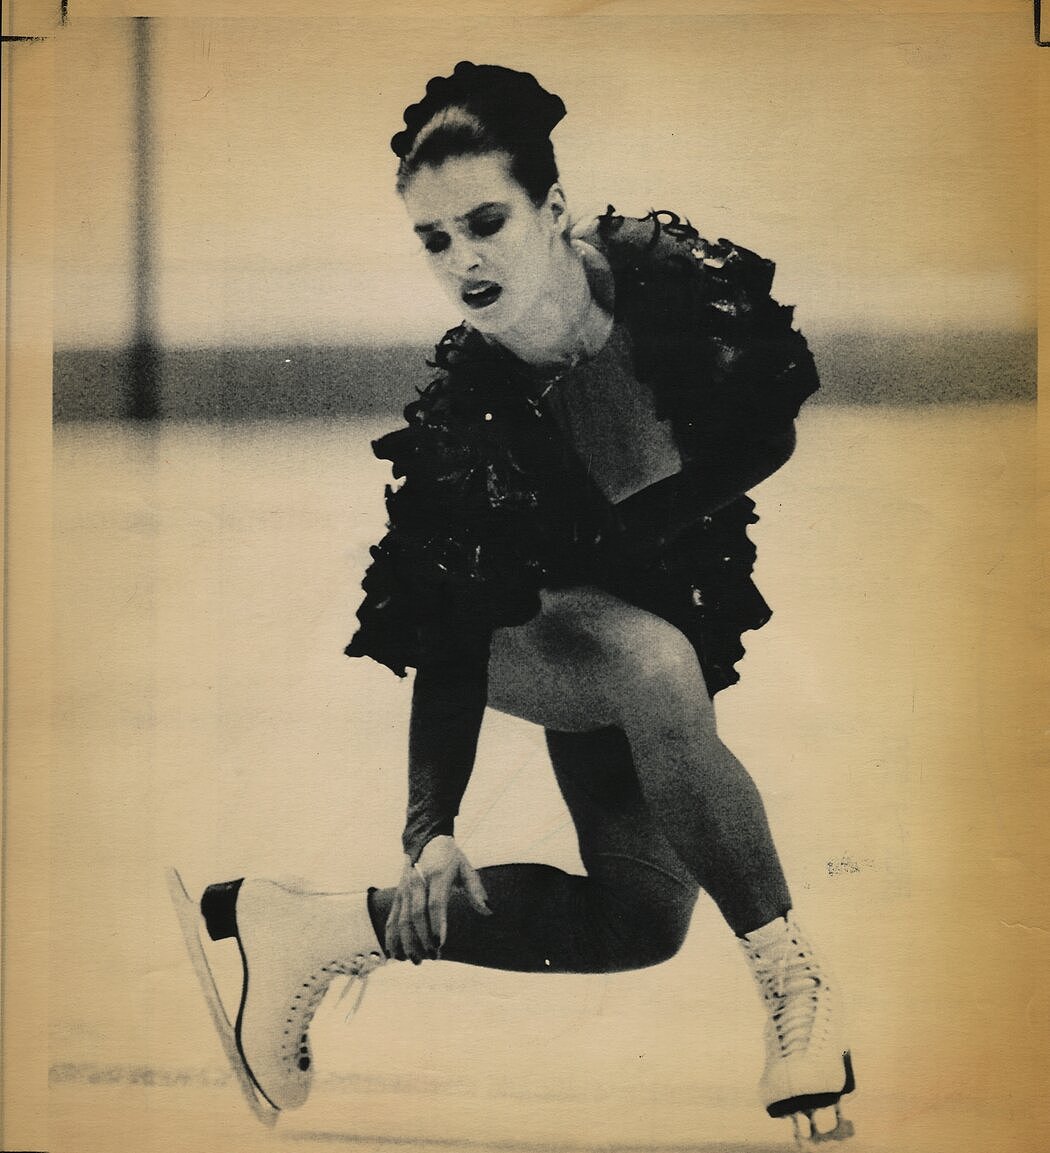 卡特琳娜·维特是1984年和1988年东德奥运会花样滑冰冠军，长期以来一直否认参与该国的兴奋剂计划。